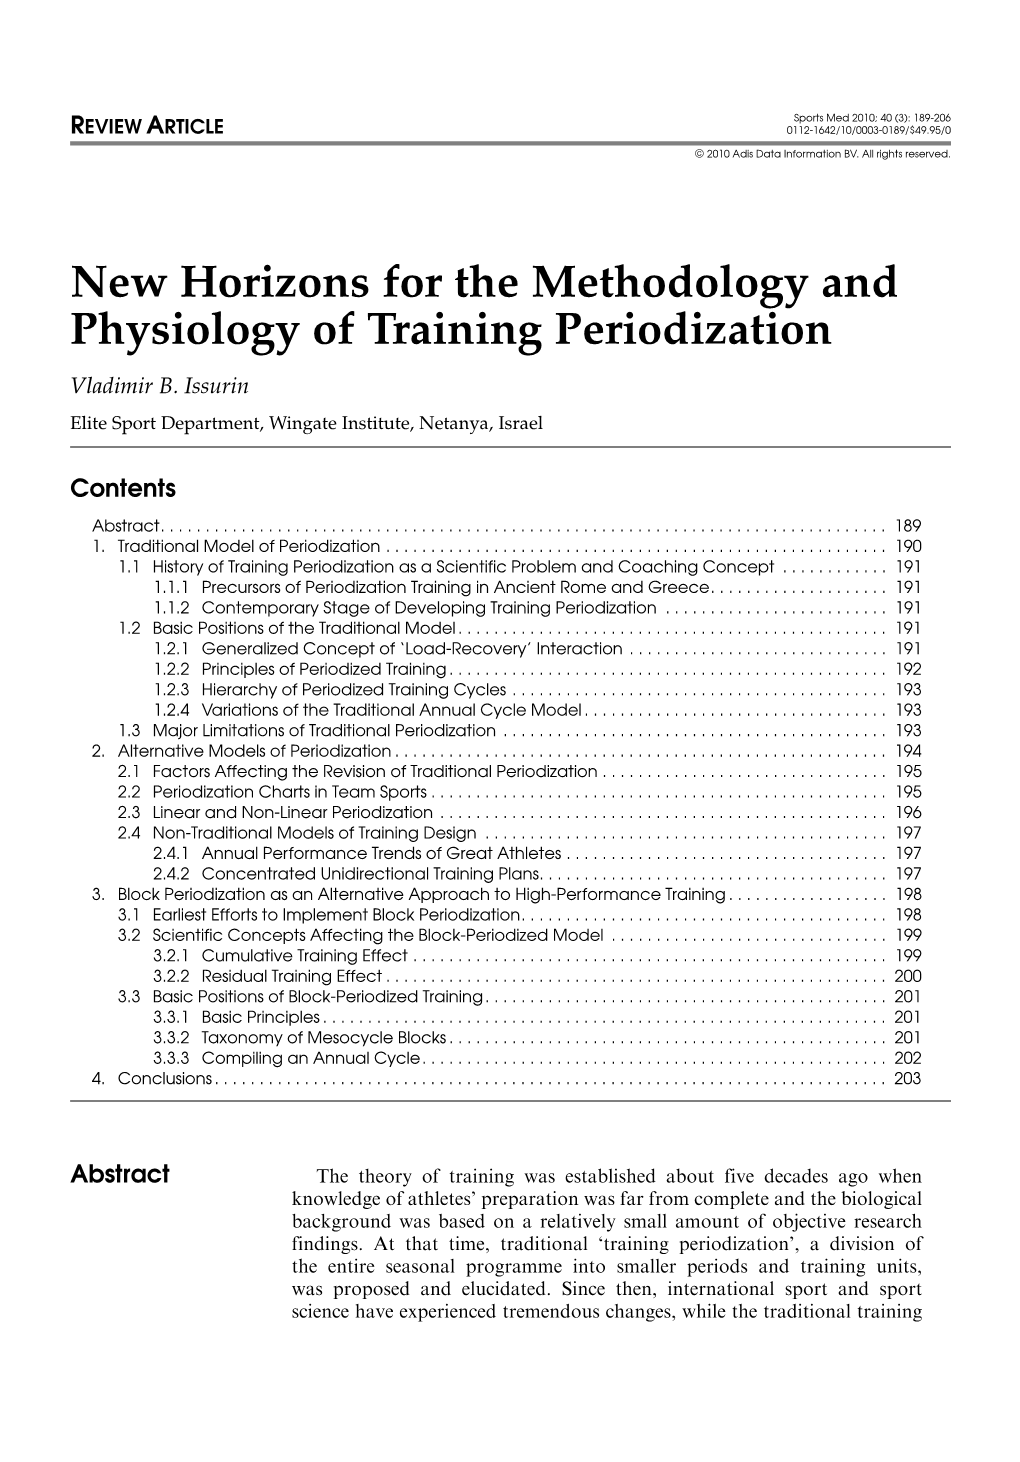 New-Horizons-Periodization.Pdf